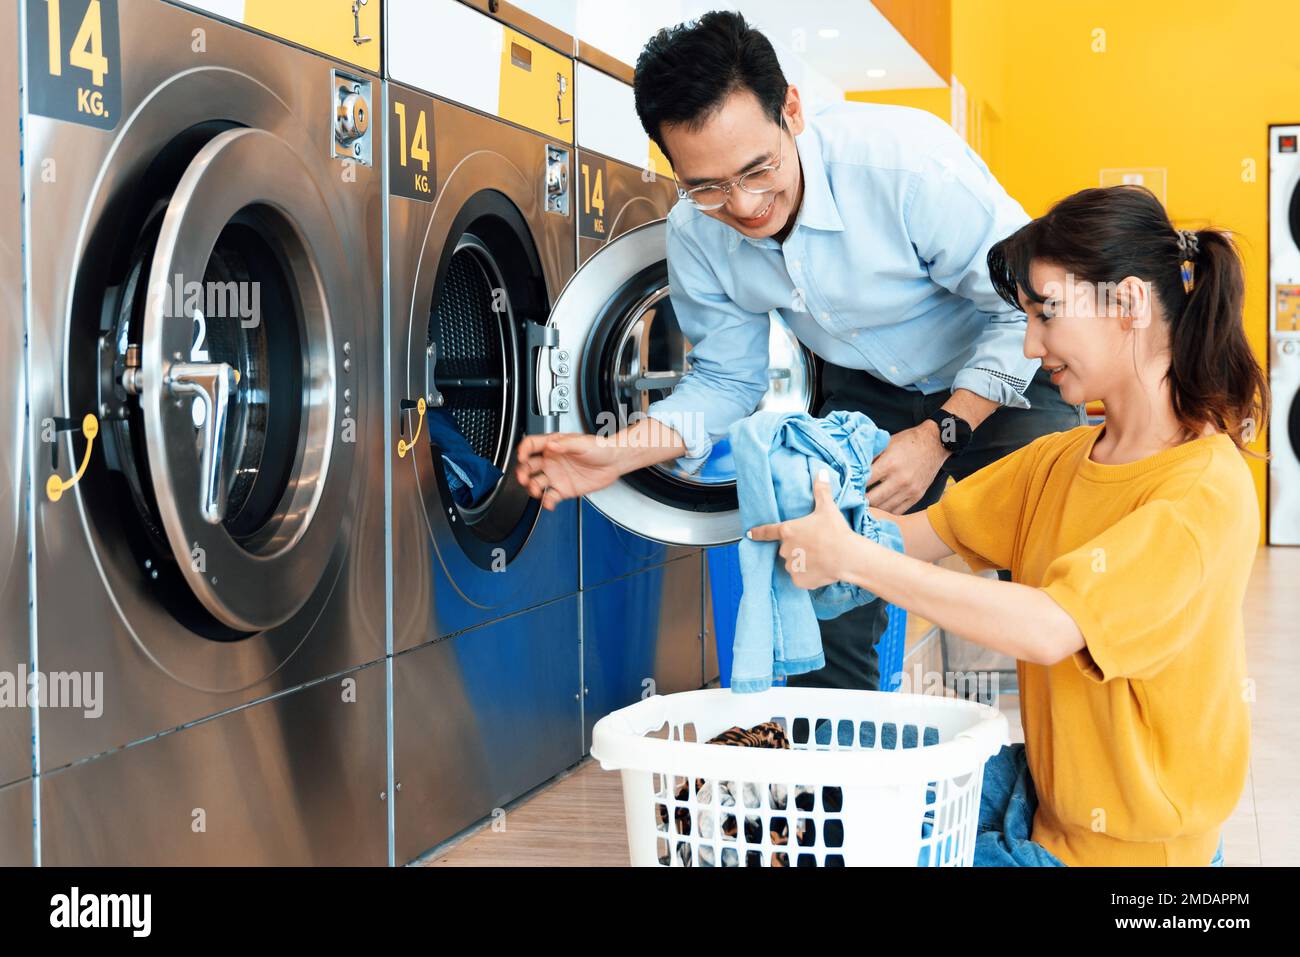 Asiatische Menschen benutzen im öffentlichen Raum eine münzbetriebene  Waschmaschine, um ihre Tücher zu waschen. Konzept einer kommerziellen  Self-Service-Wäscherei und Stockfotografie - Alamy